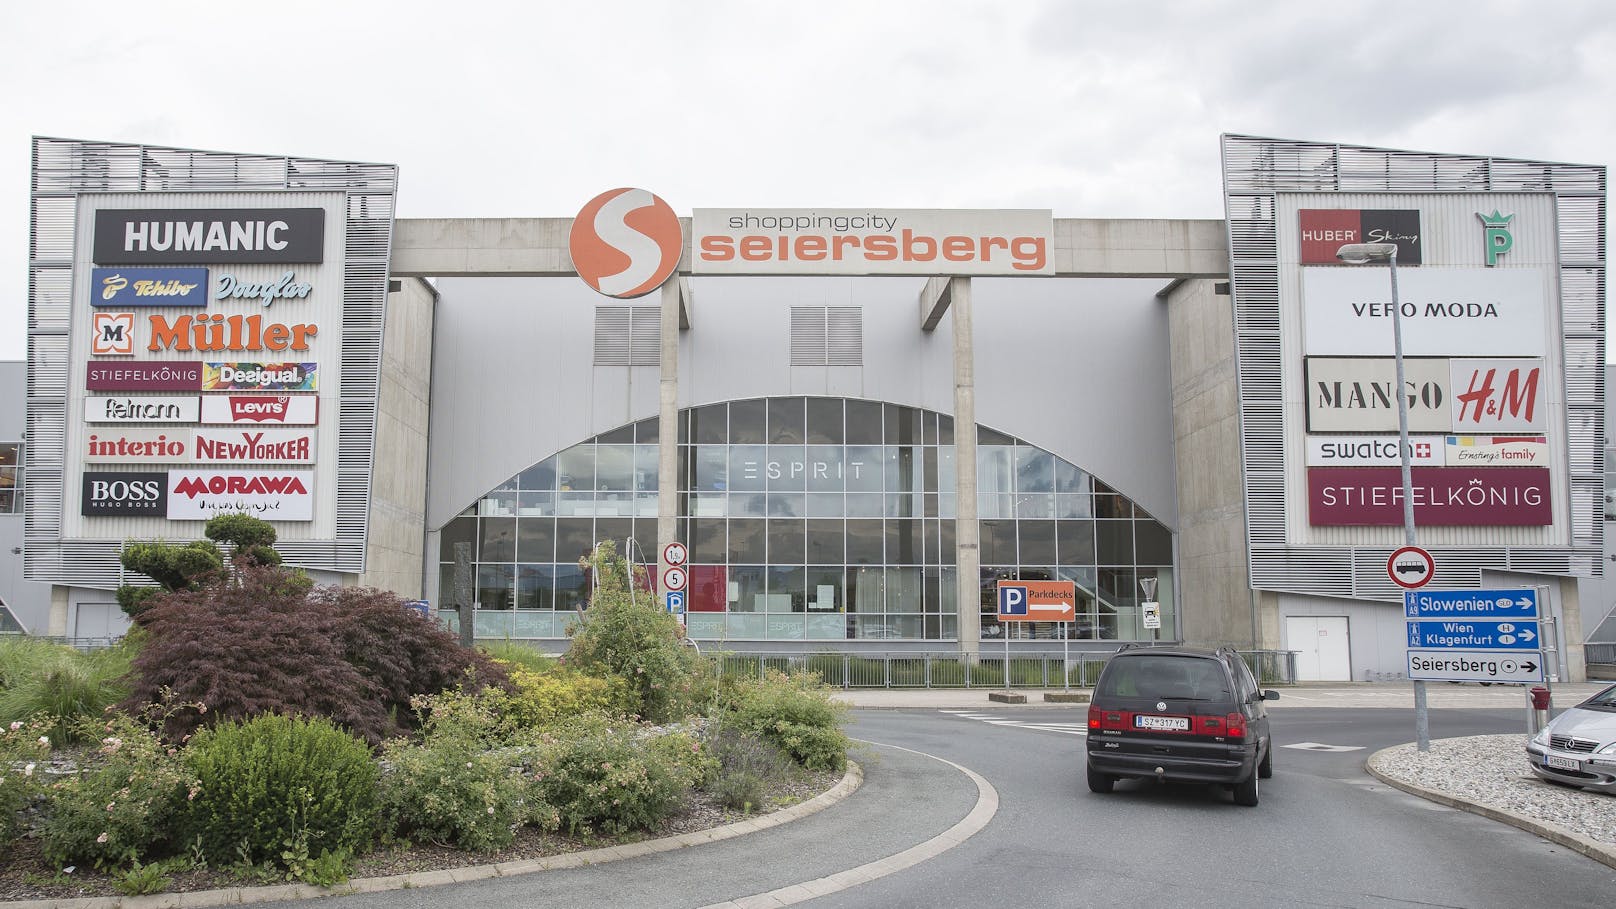 Feuer in Shoppingcity Seiersberg – eine Person verletzt